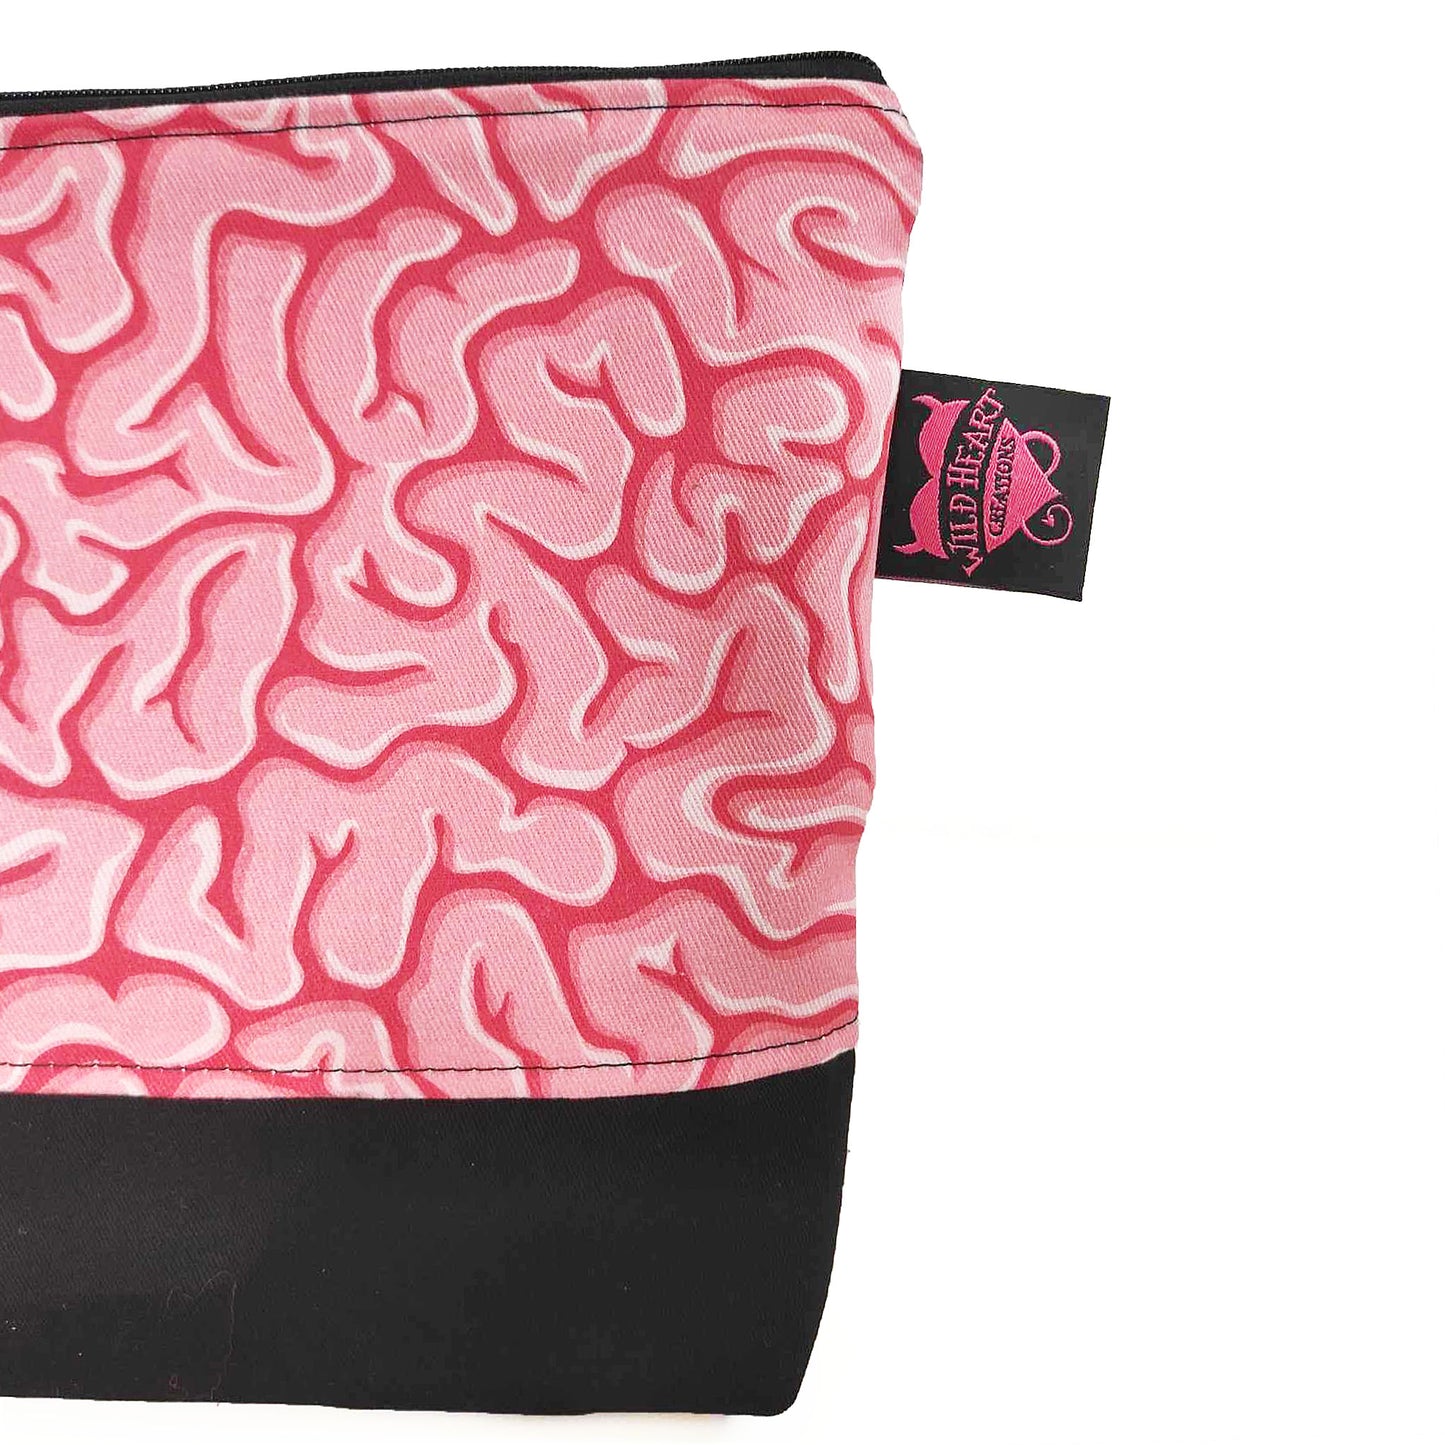 Handgefertigtes Täschchen in Rosatönen mit Gehirnmotiv. Perfekt für deinen Kleinkram und praktisch, da es in jede Tasche passt.